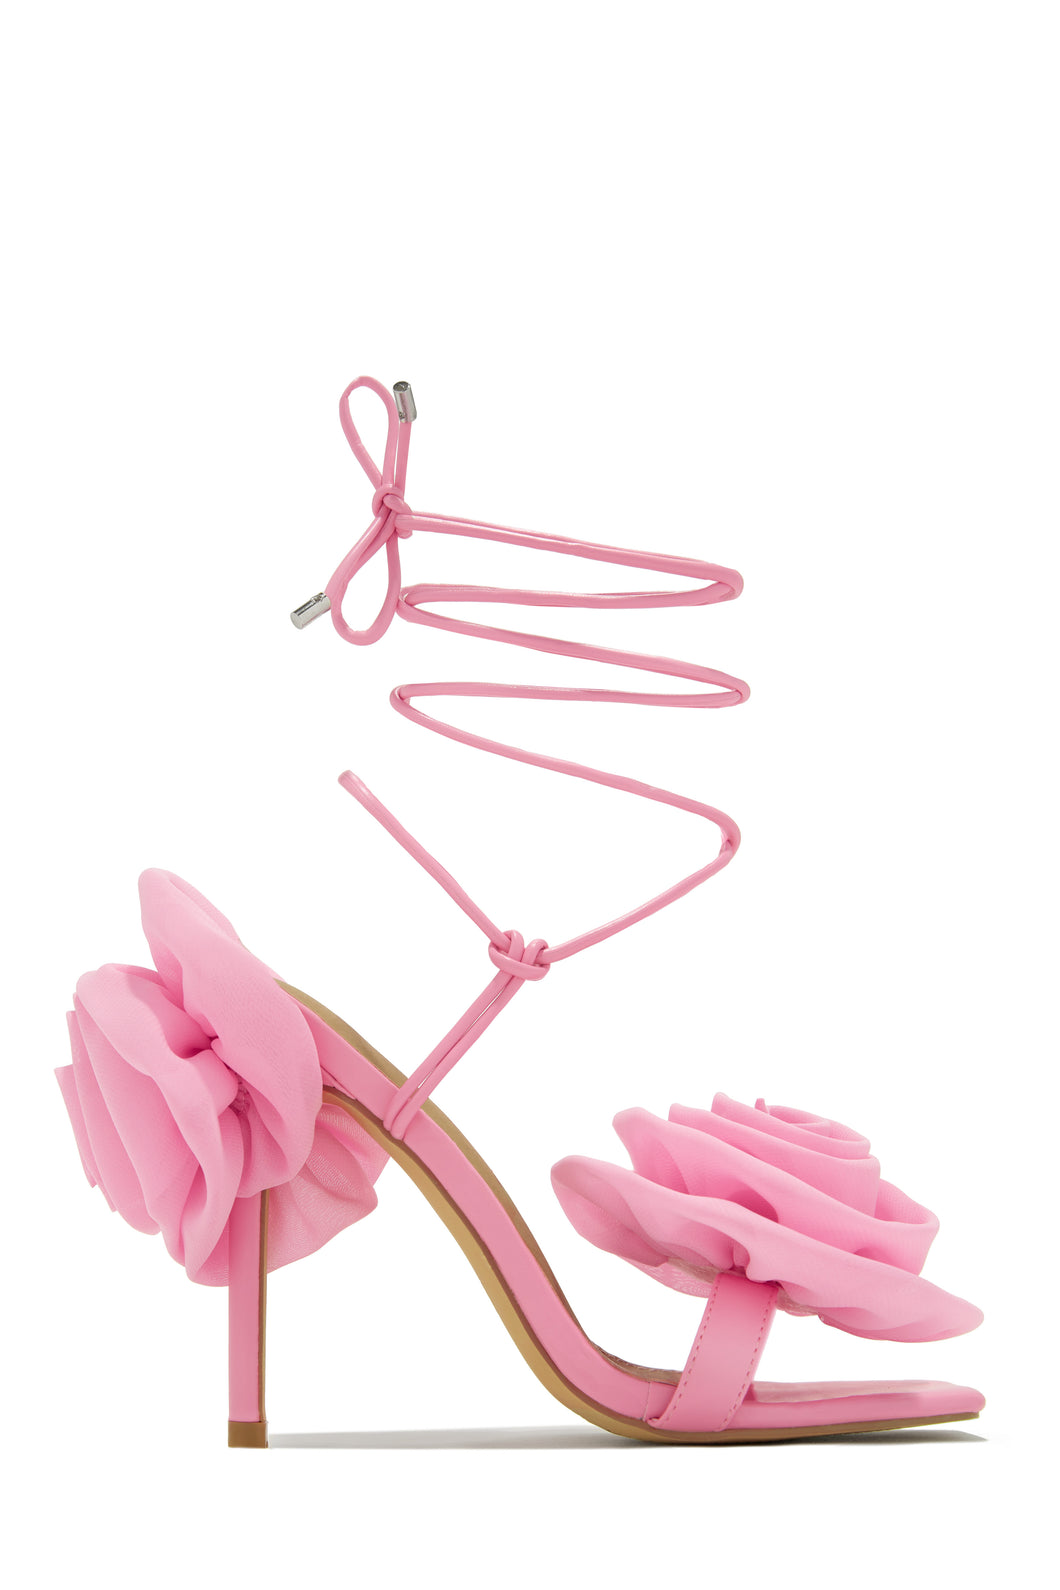 Divine Bloom Rosette Lace Up Heels - Pink